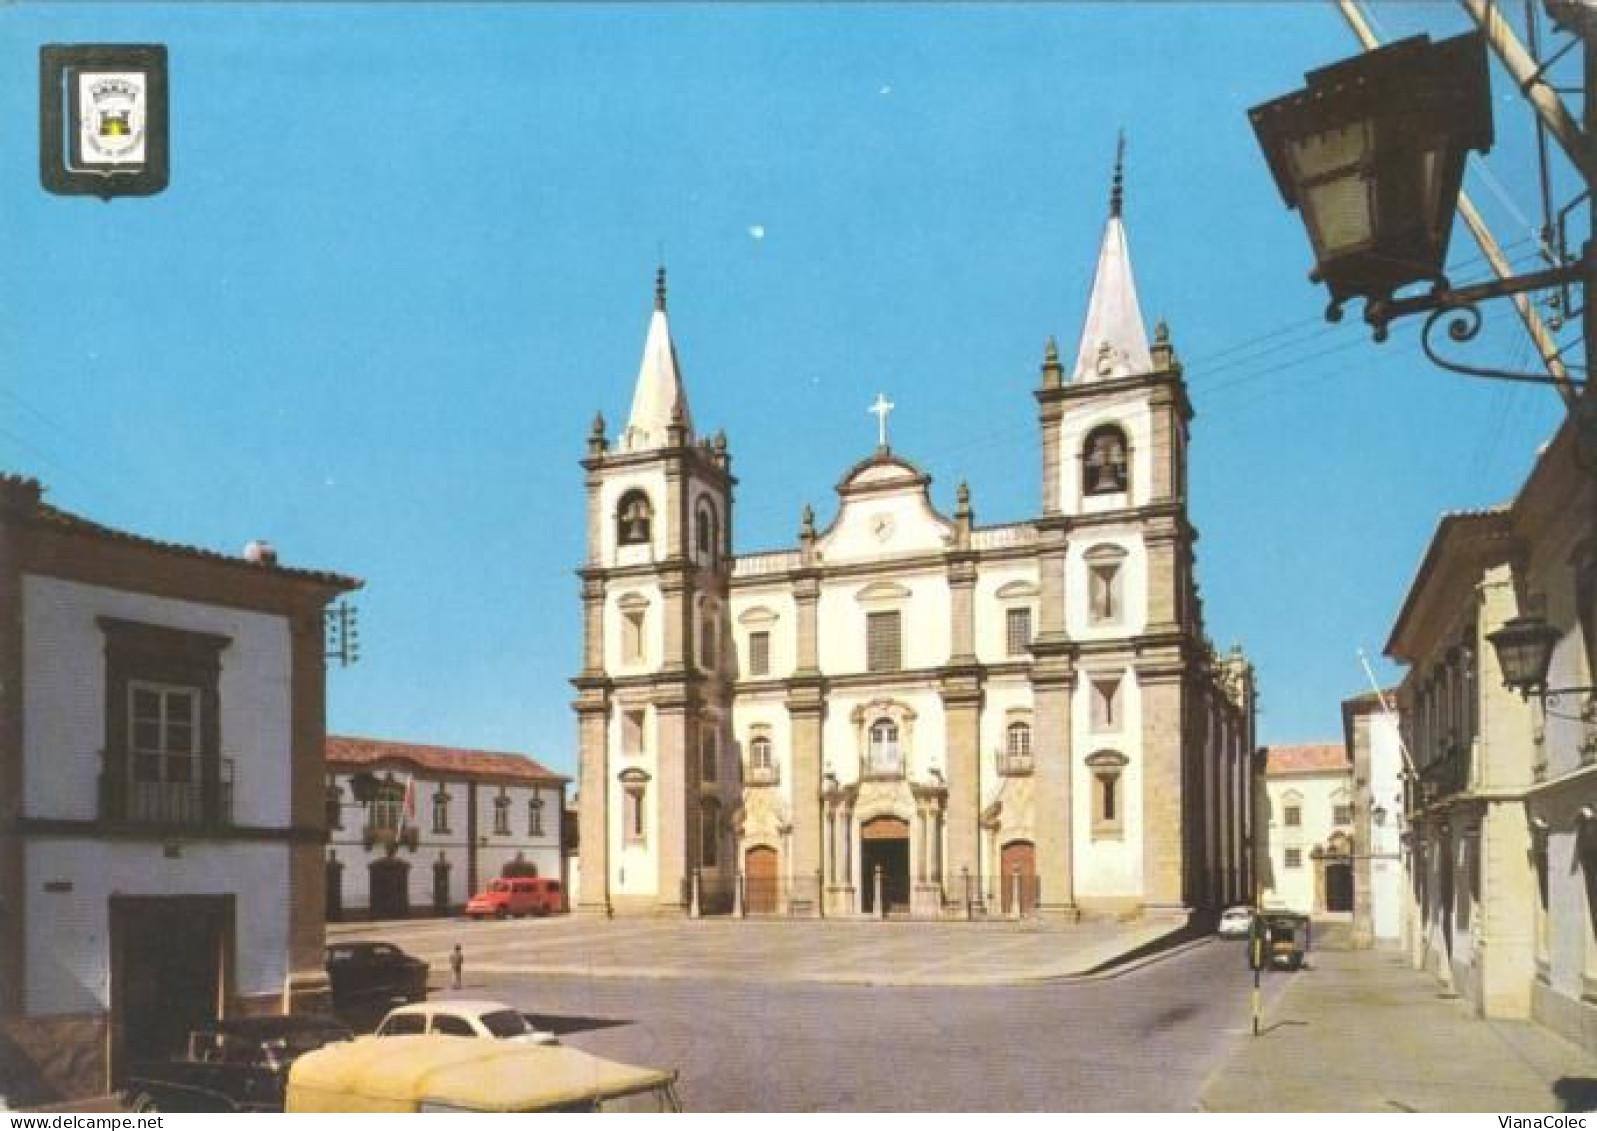 Portalegre - Sé Catedral / Com Brasão Da Cidade - Portalegre